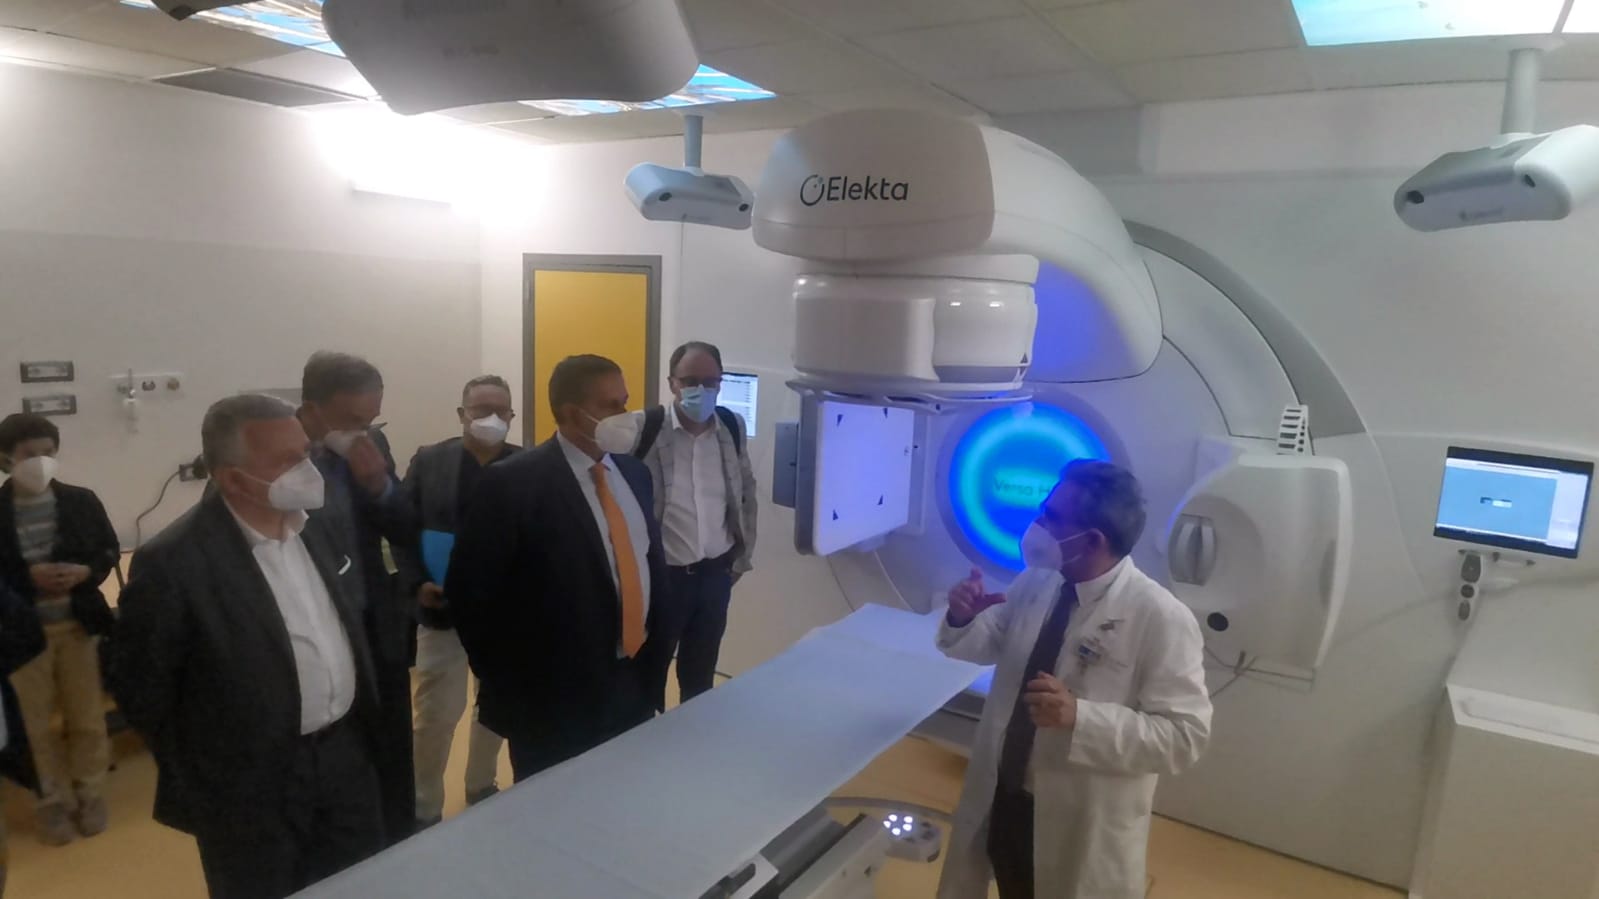 La Spezia, in arrivo fondi del Pnrr per la sanità: oltre 9 milioni di euro per nuove apparecchiature